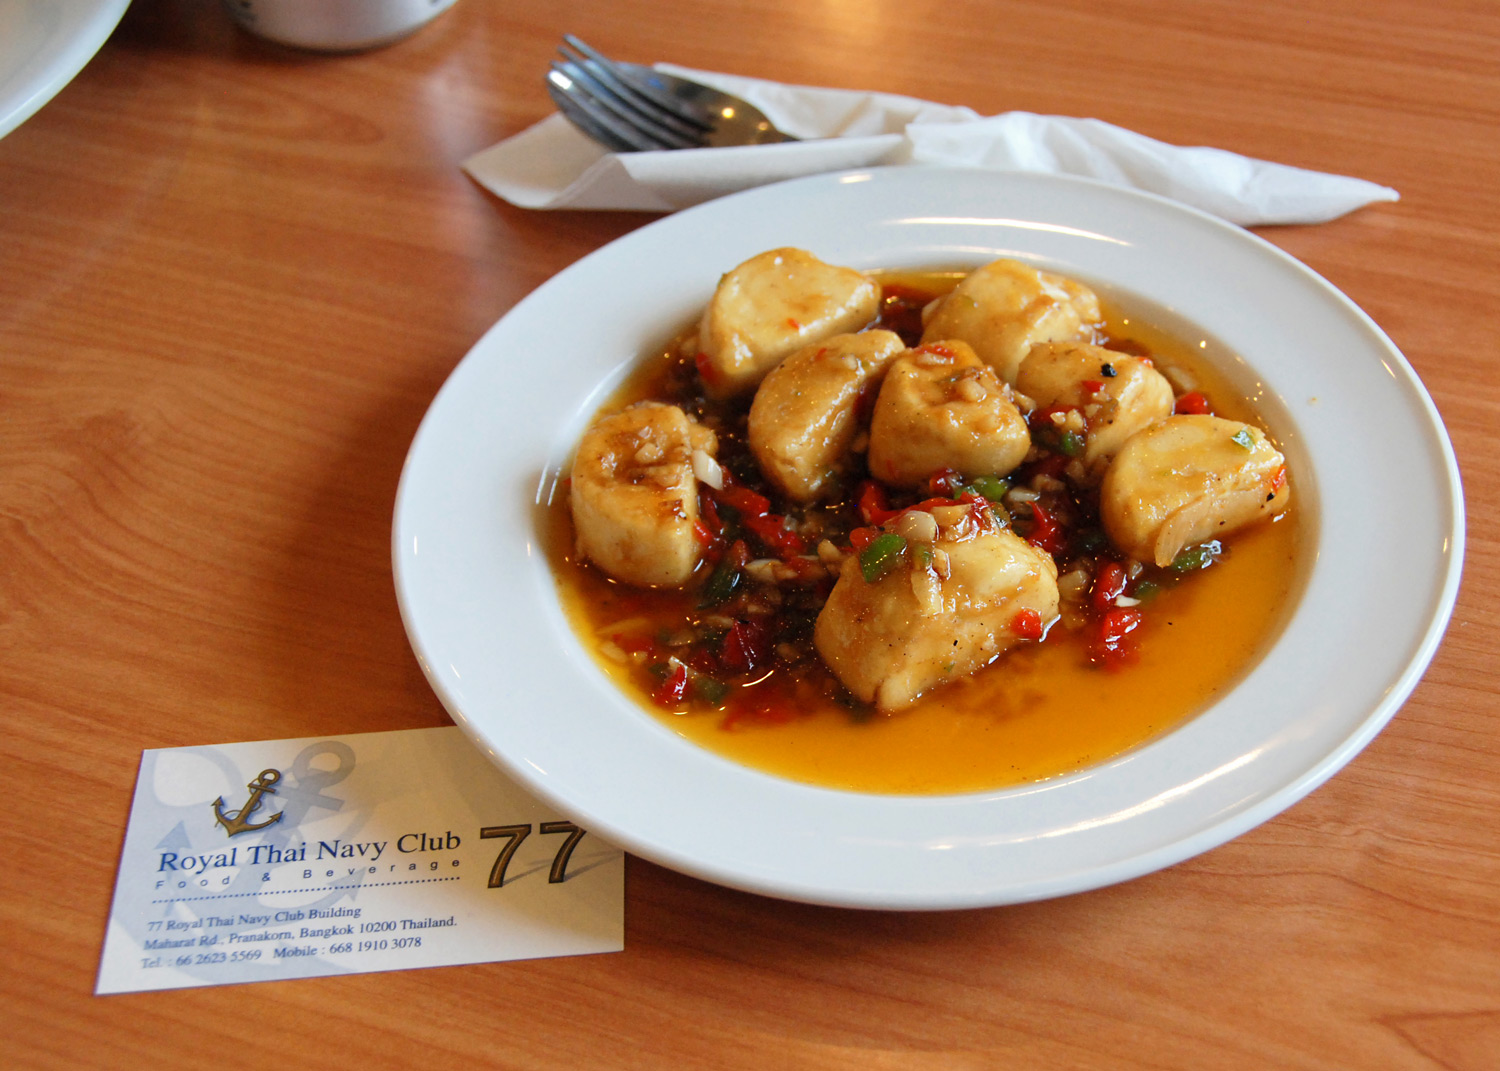 Tofu dish a the Royal Thai Navy Club, Bangkok